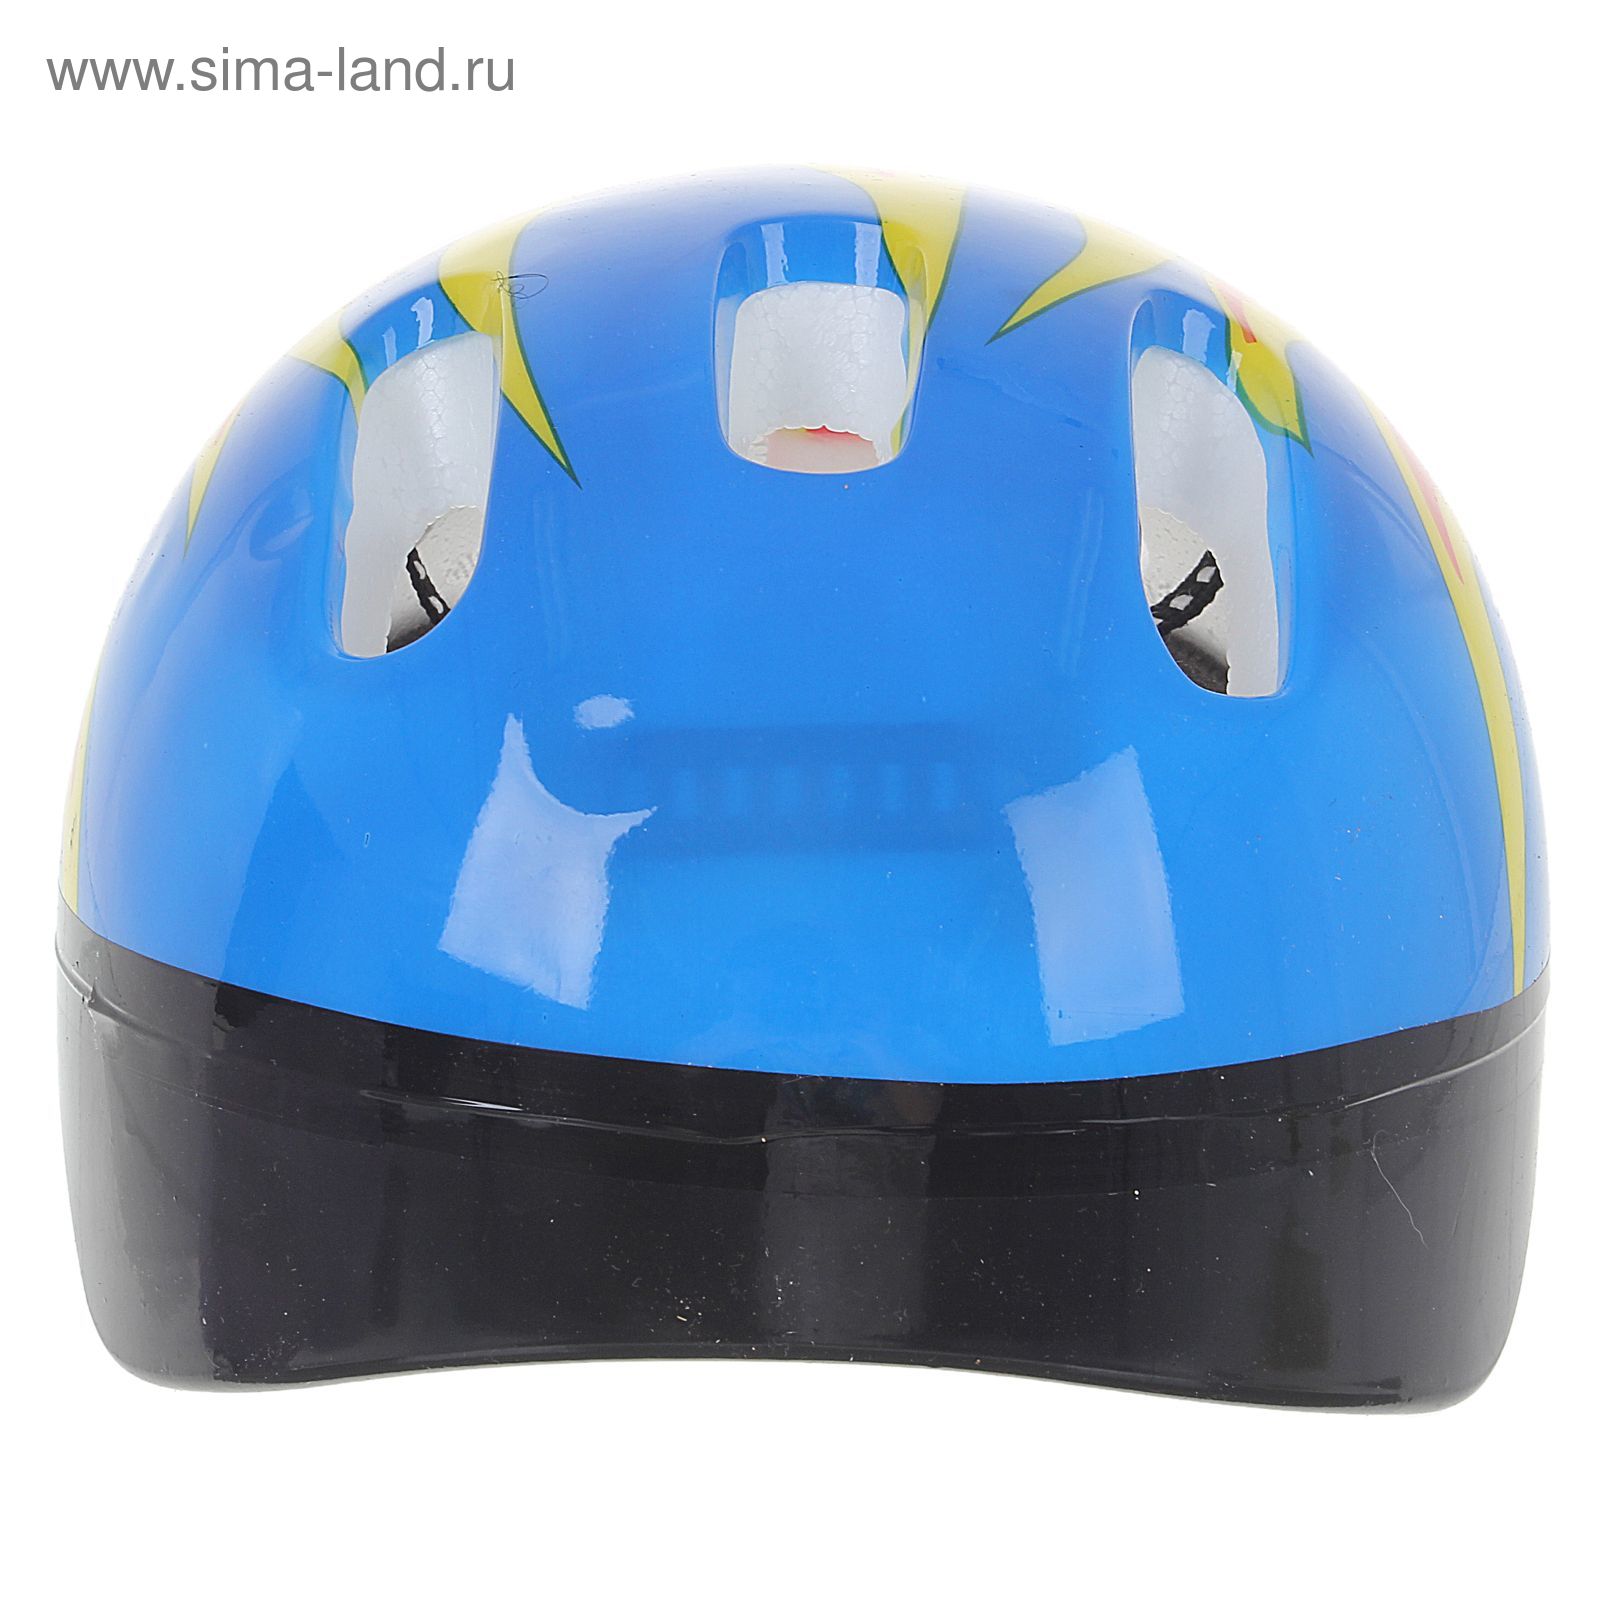 Шлем защитный детский OT-H6, размер M (55-58 см), цвет: синий